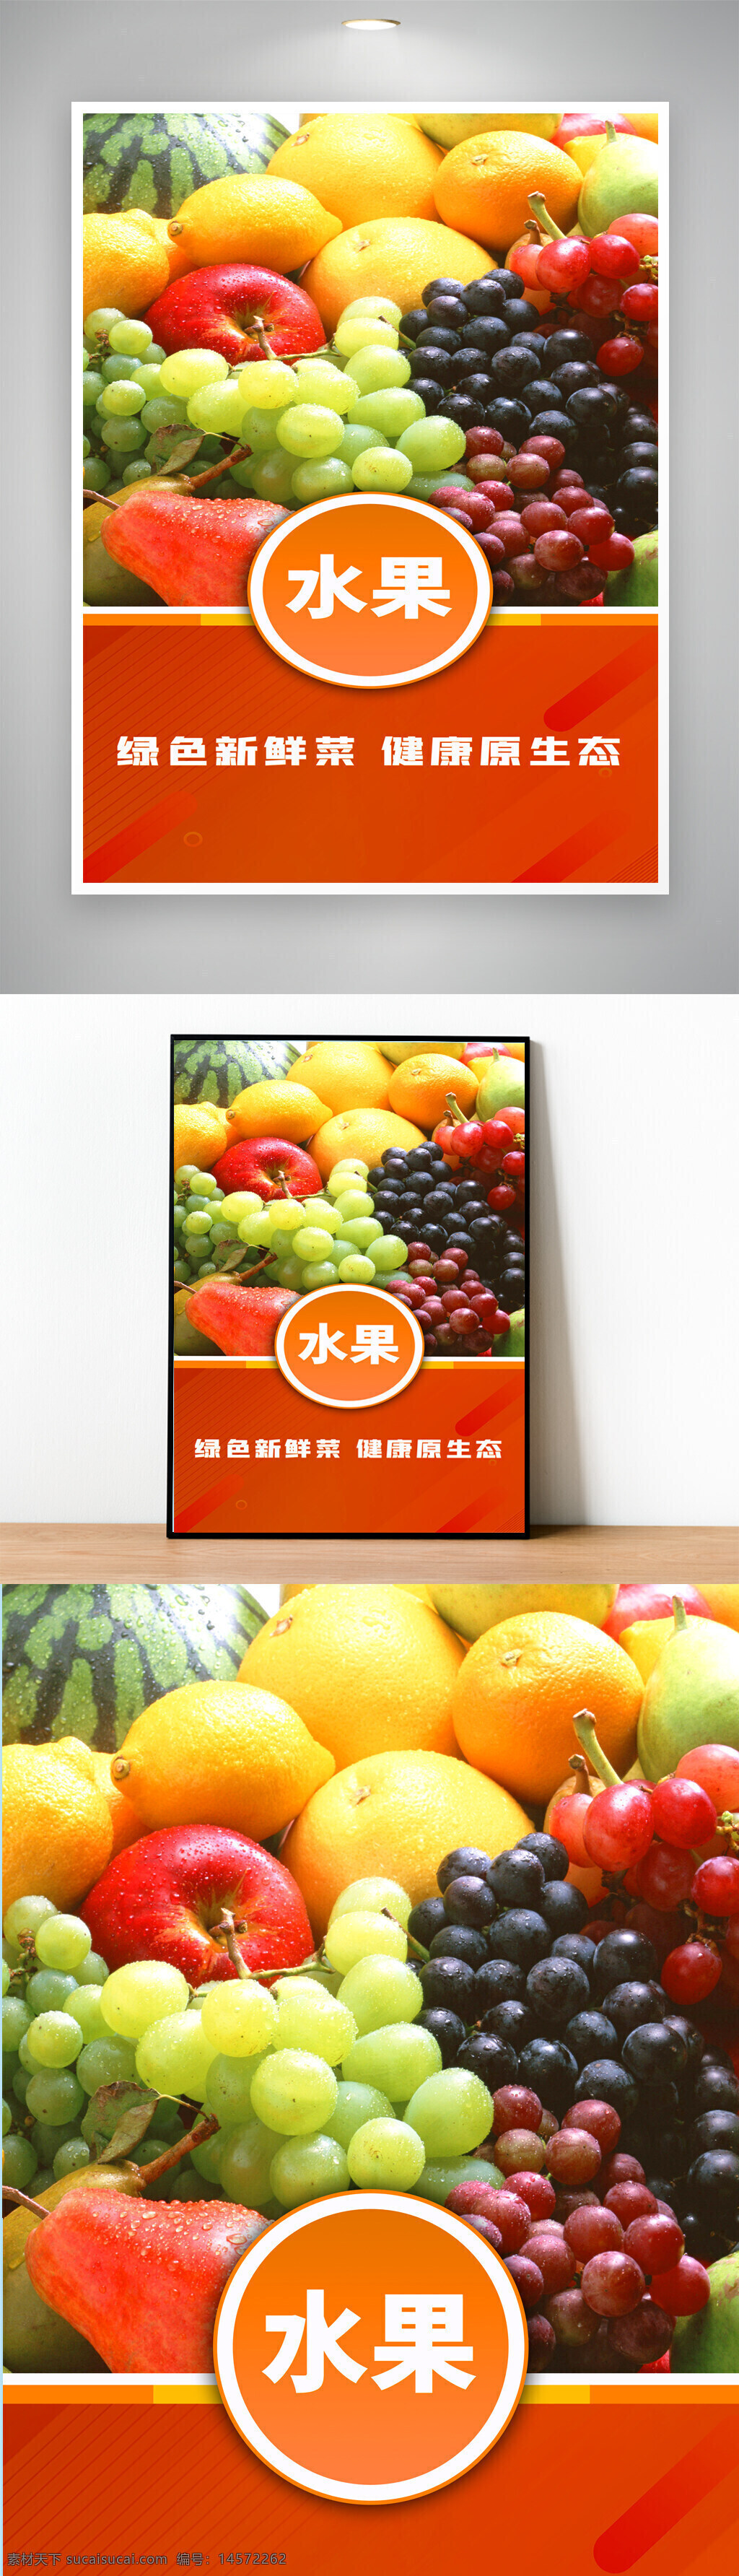 水果海报 多种水果 葡萄 苹果 橙子